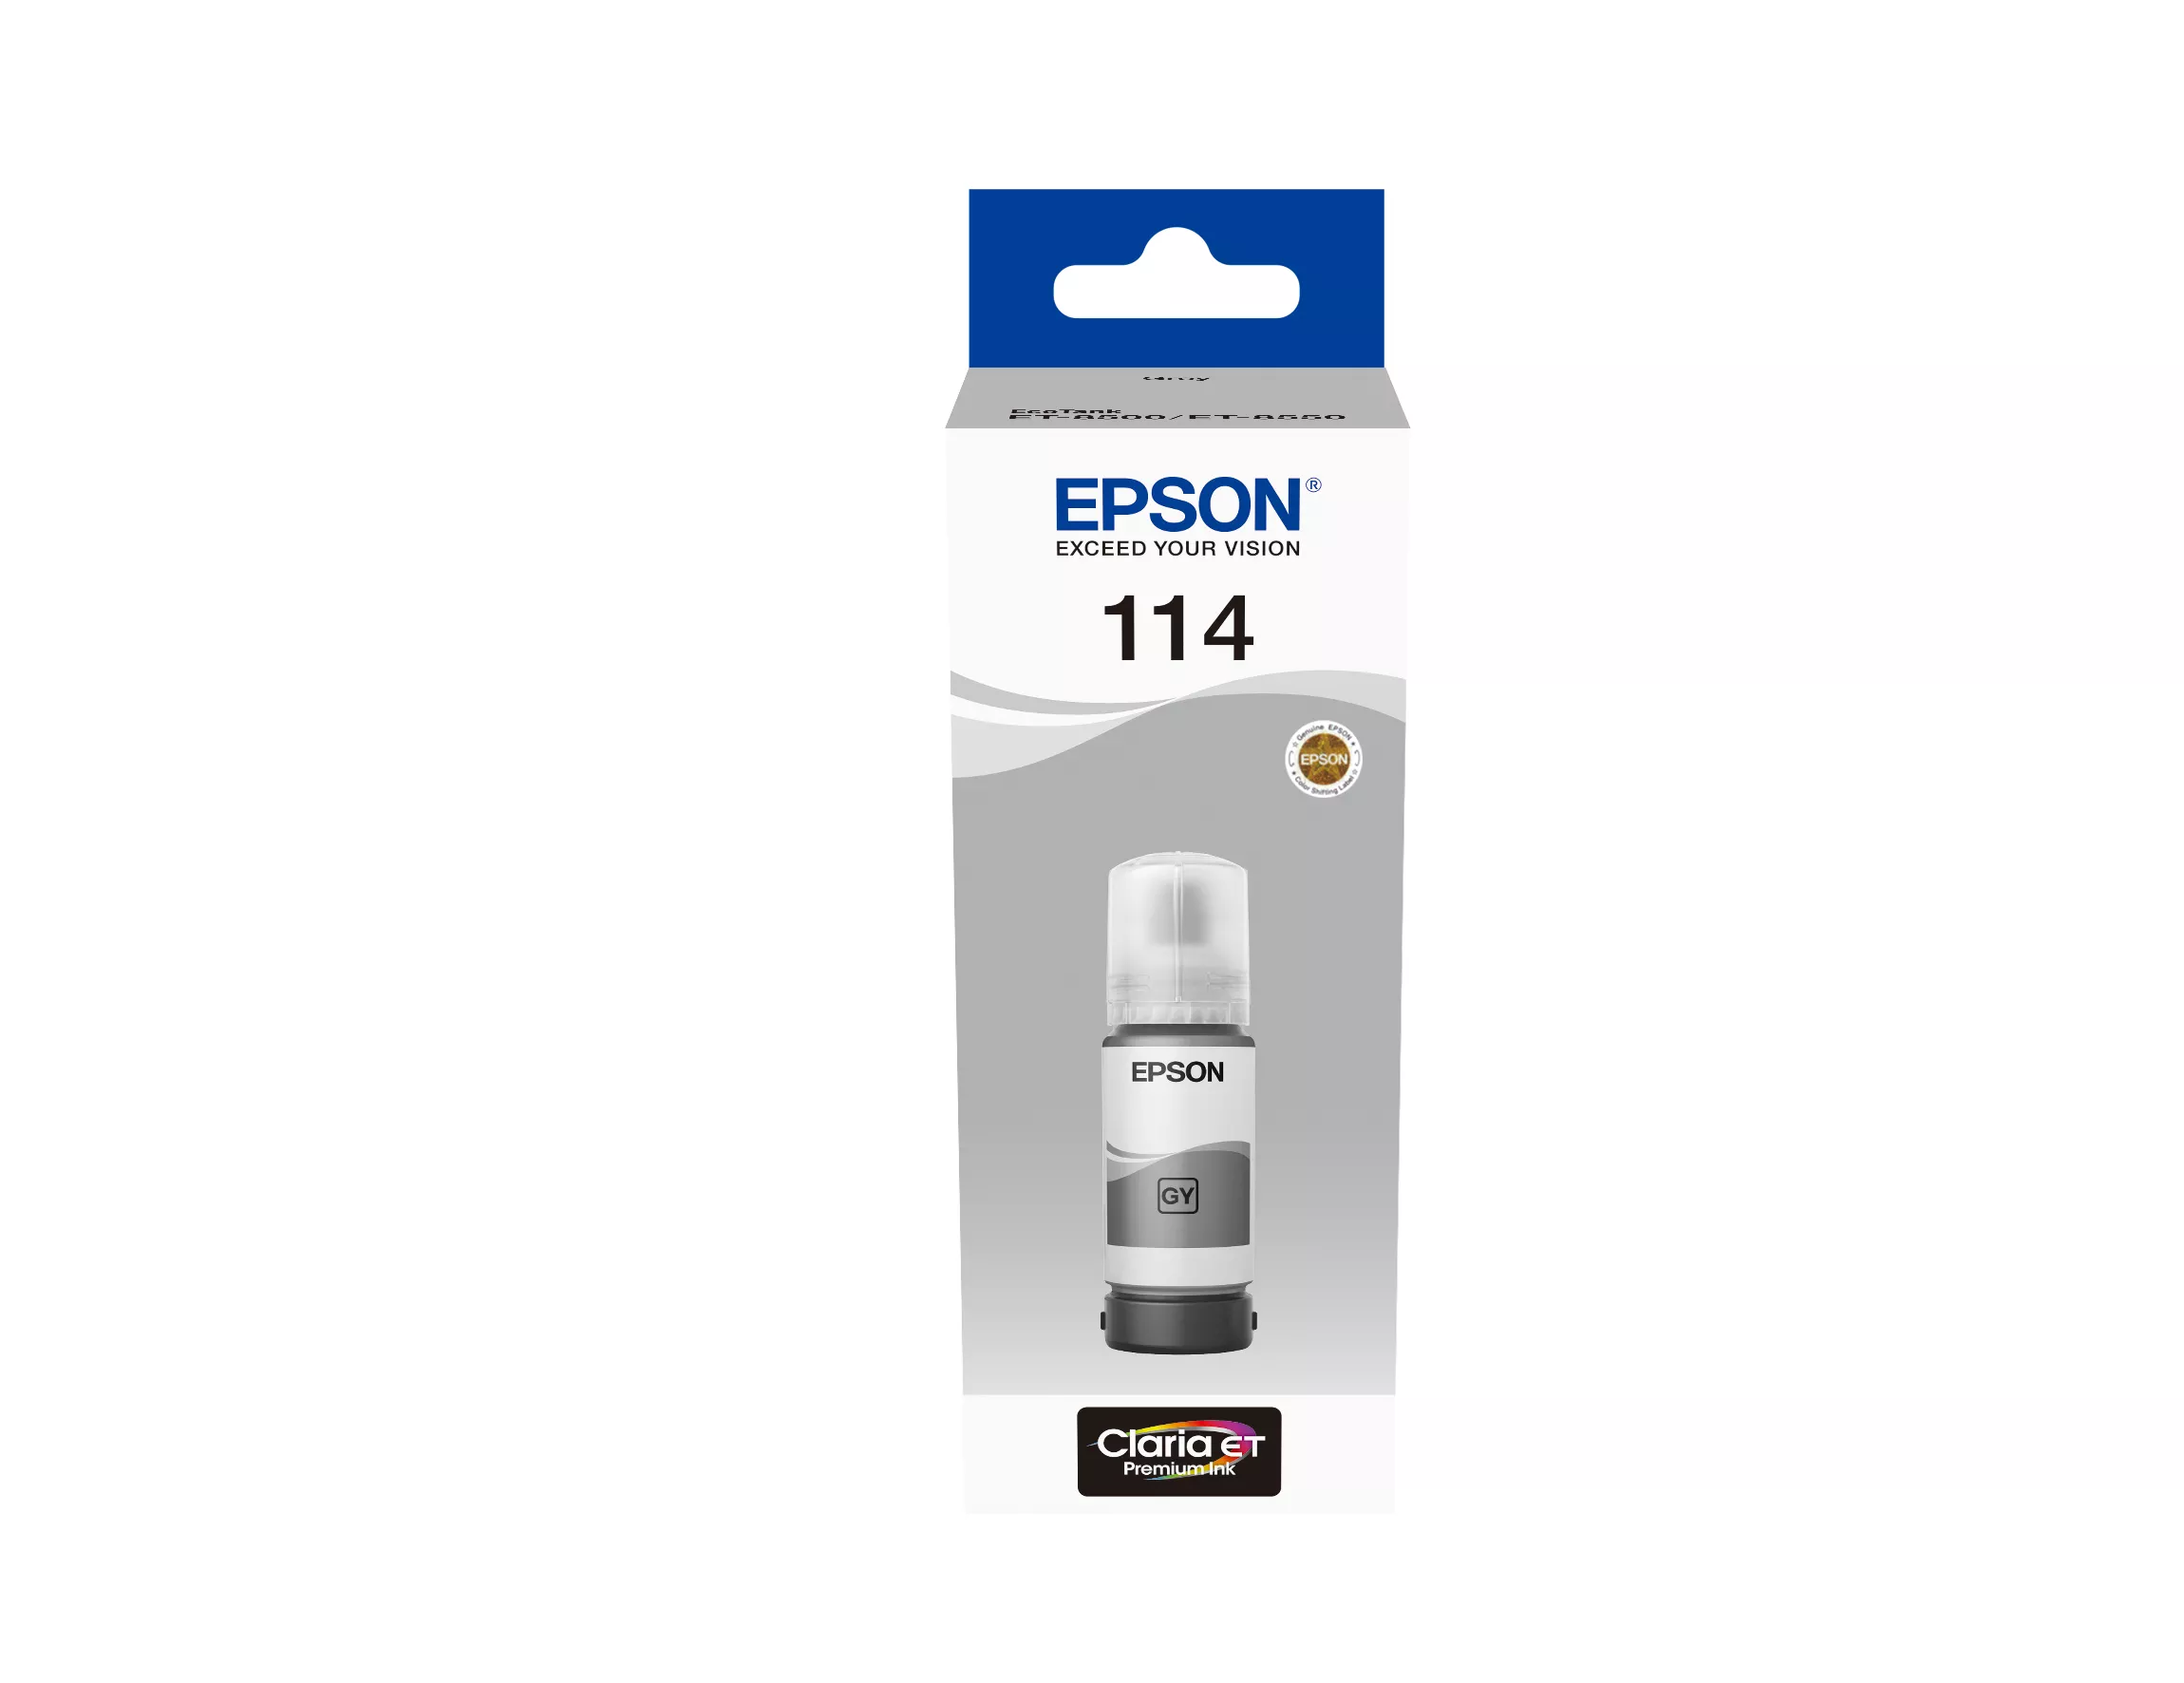 Achat EPSON 114 EcoTank Grey ink bottle au meilleur prix